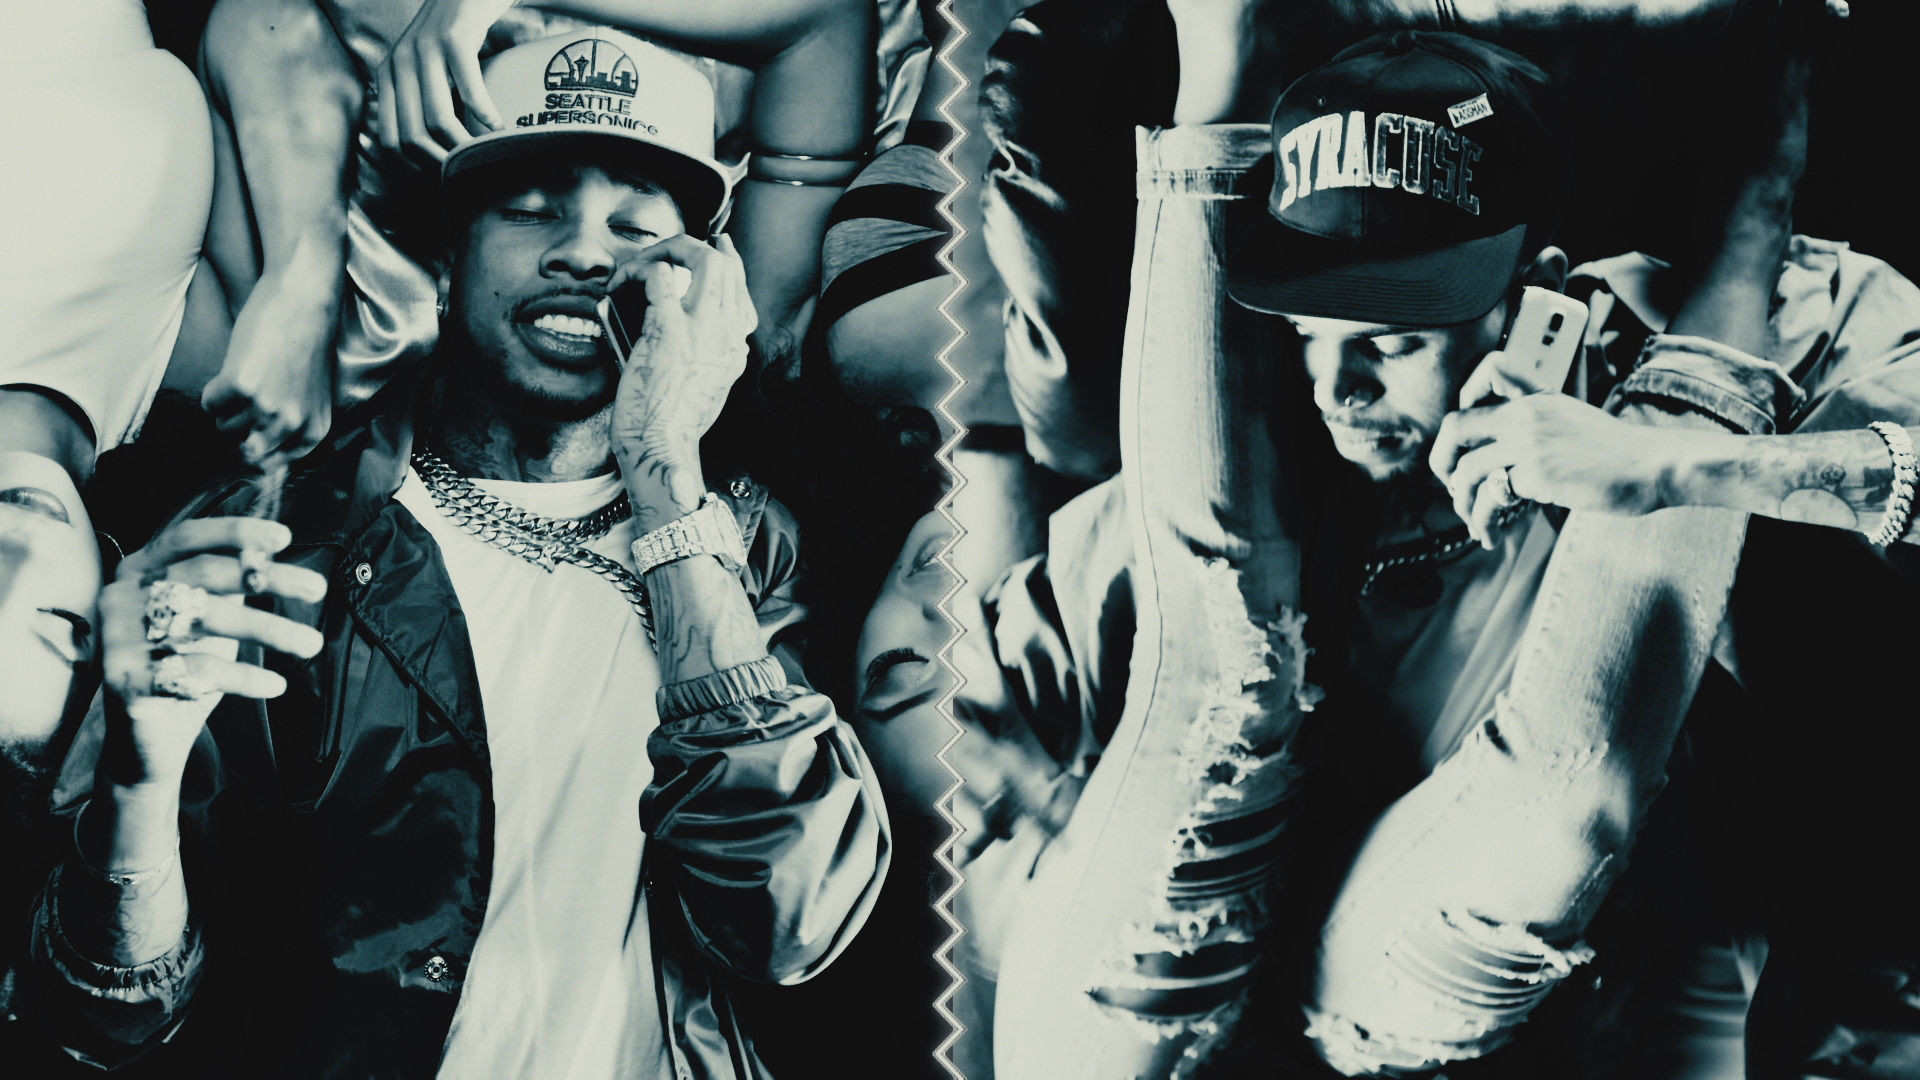 1920x1080 ScHoolboy Q)“ von Chris Brown & Tyga auf Apple Music